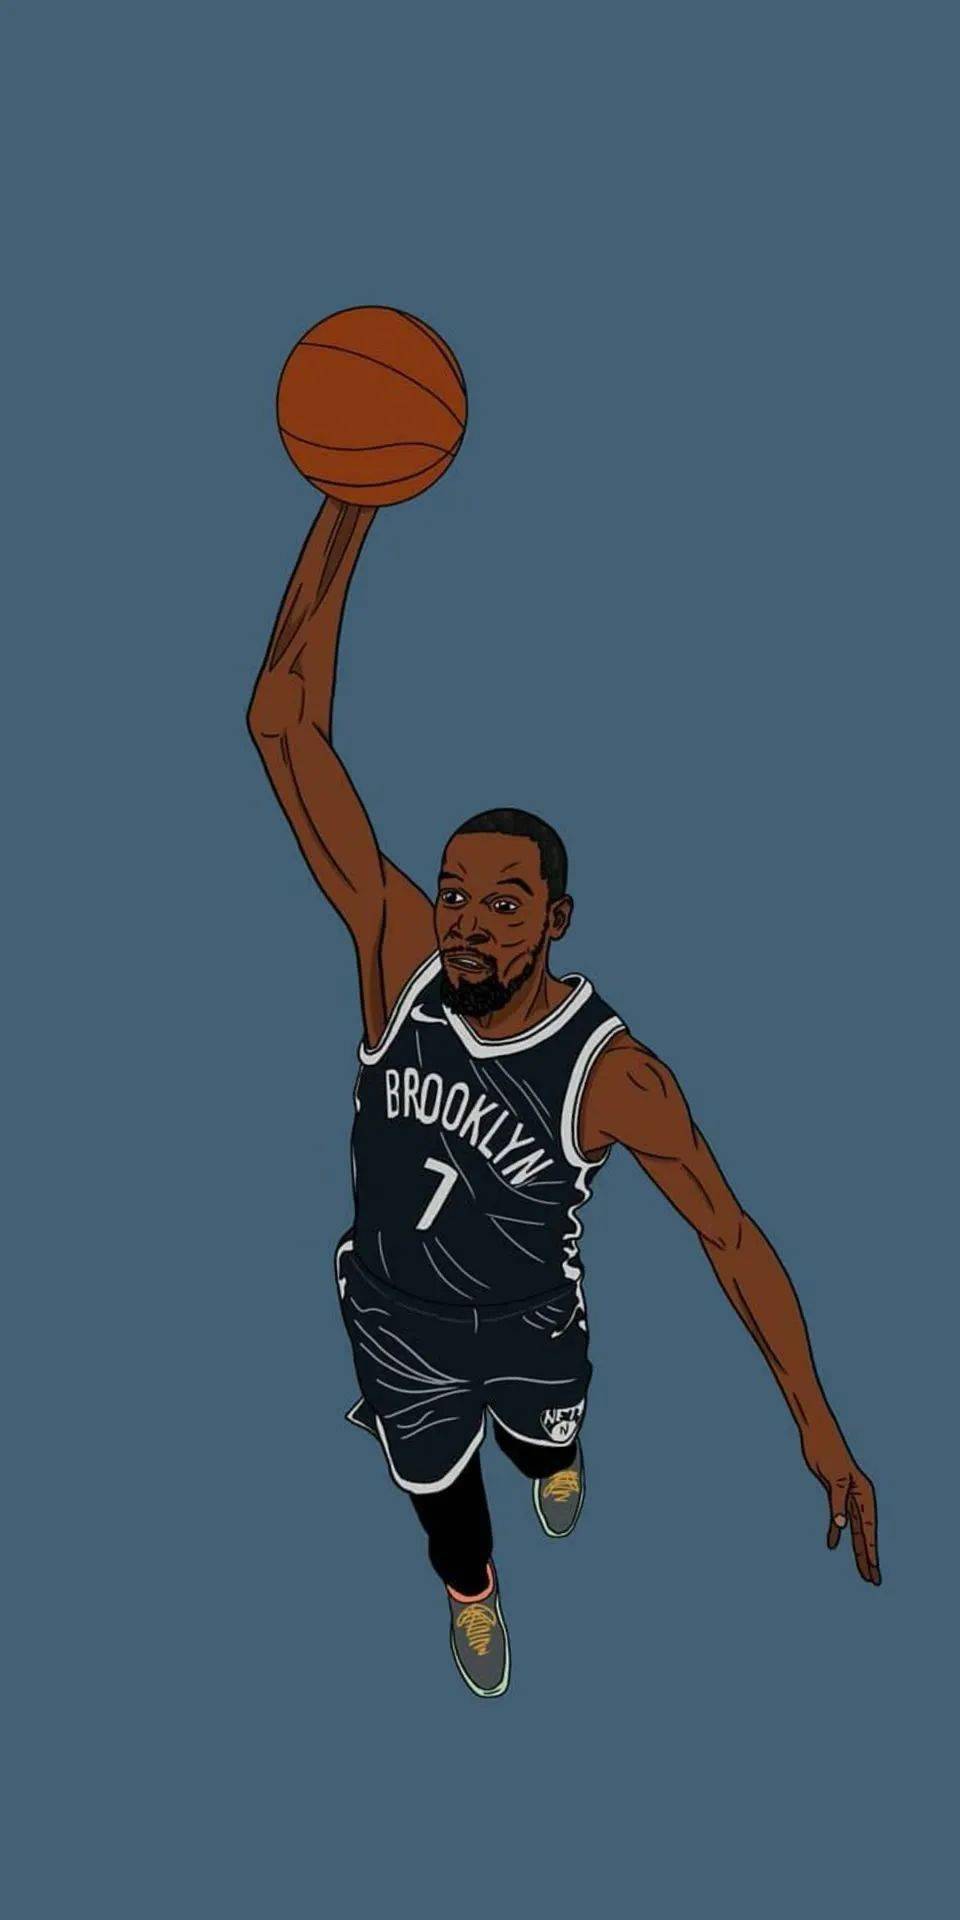 篮球手机壁纸 动漫图片